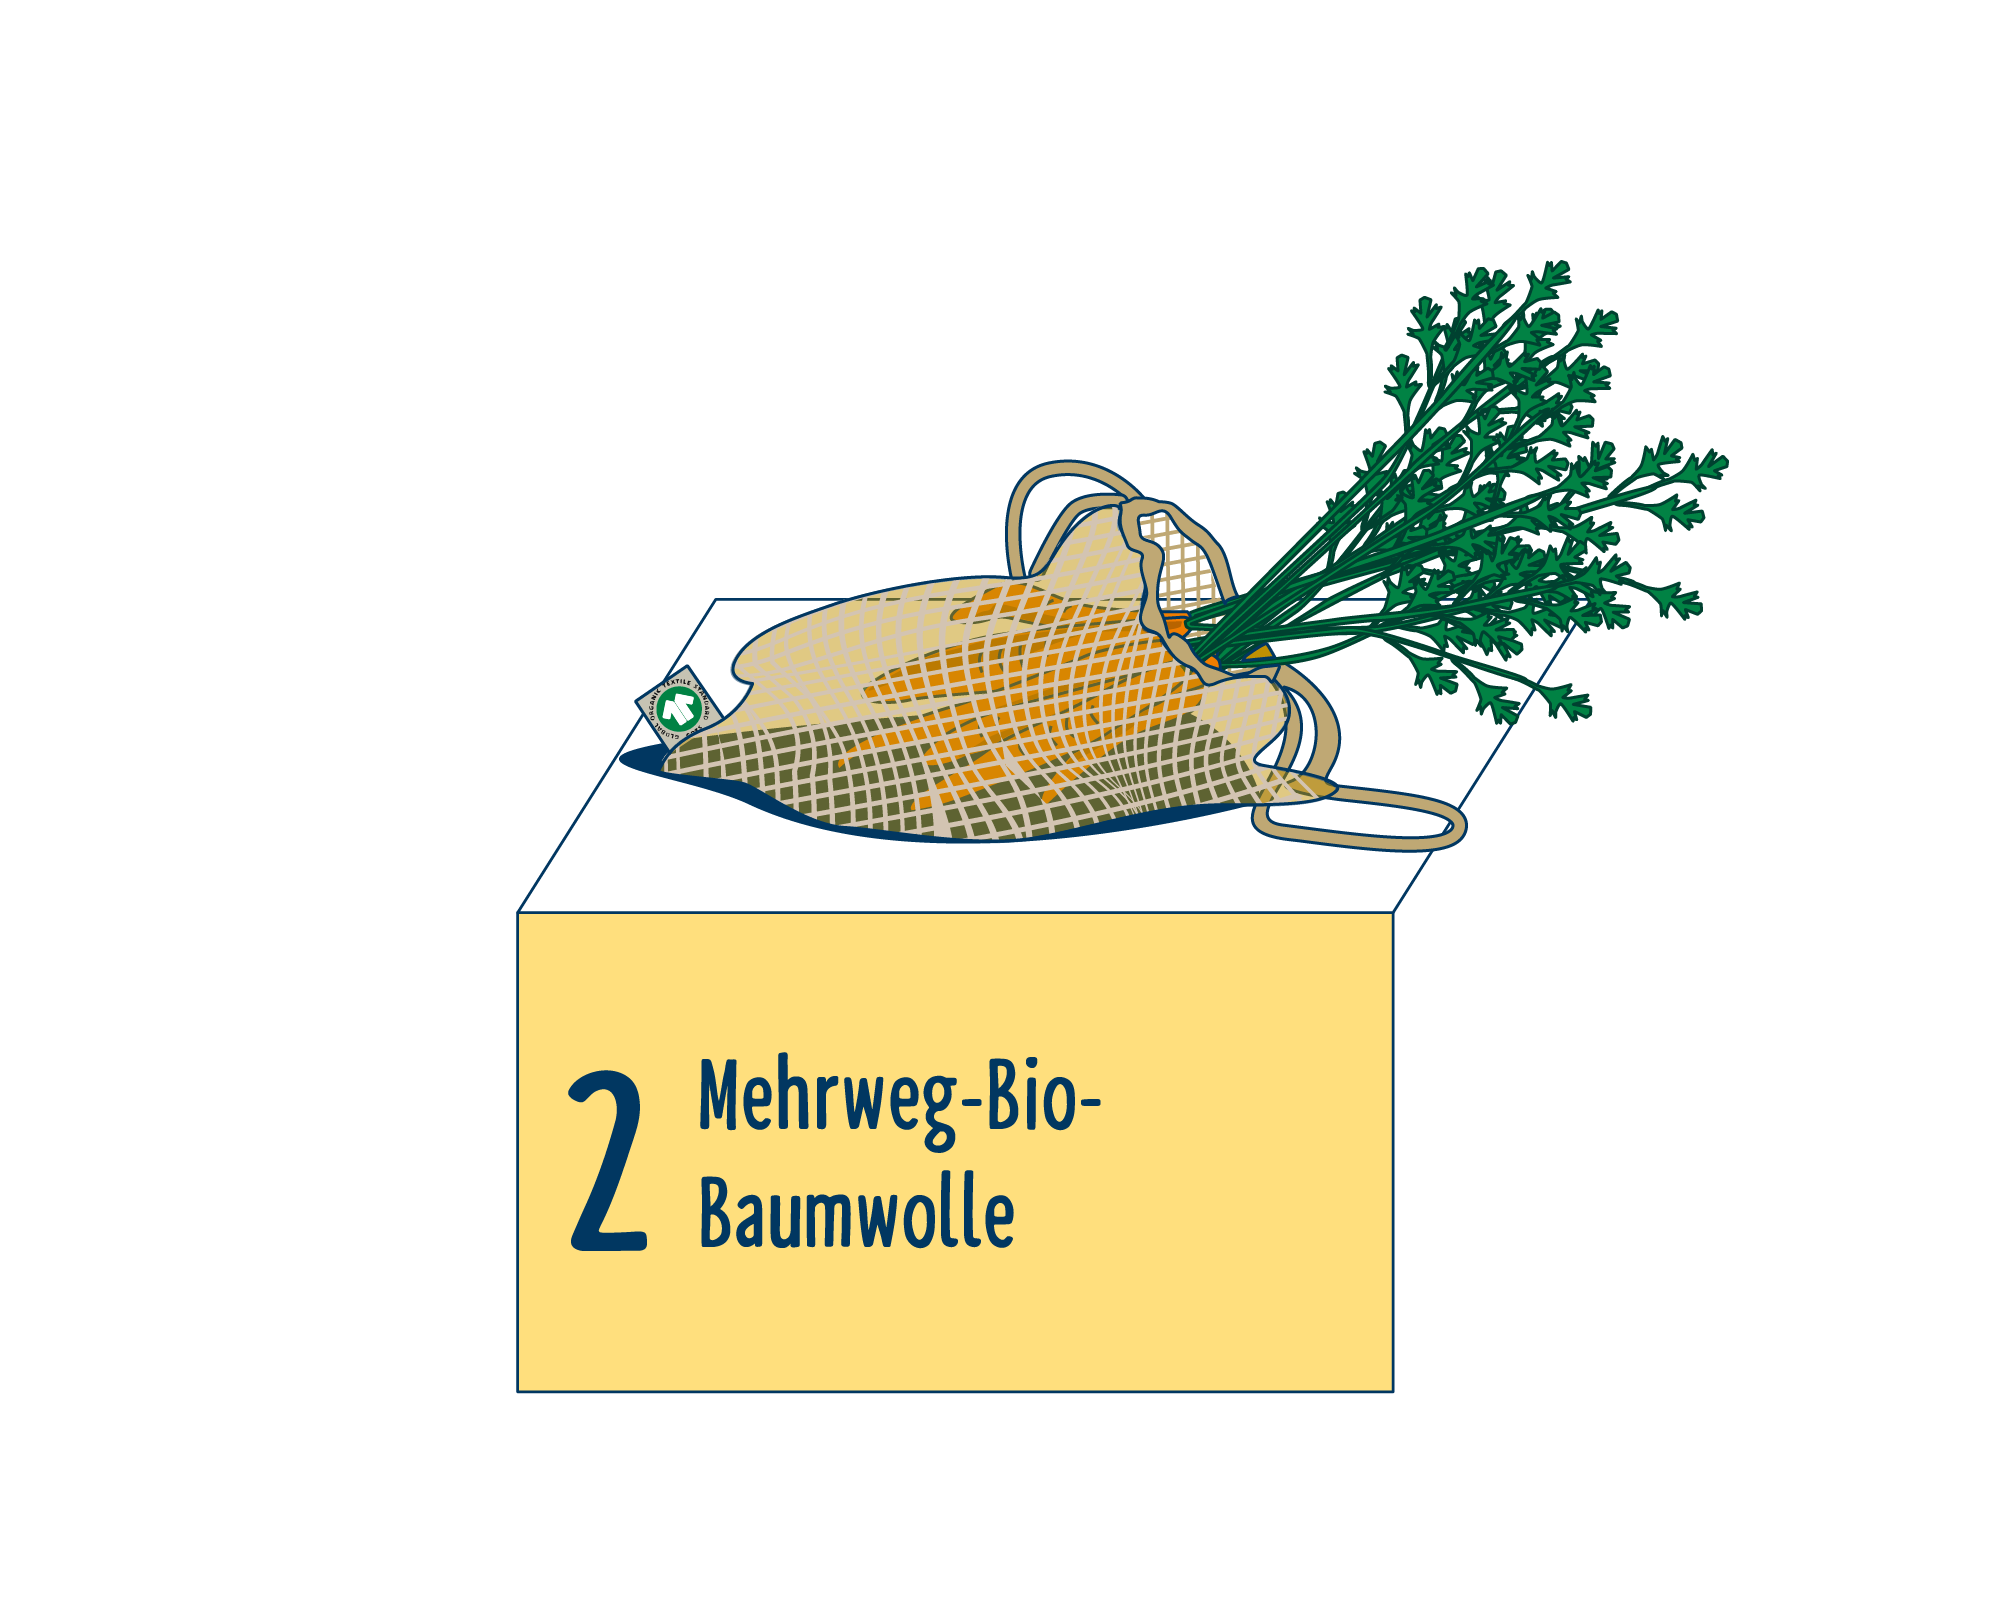 Bild Produktverpackung von Obst & Gemüse: Tragehilfen eingeordnet auf Platz 2, bestehend aus Mehrweg-Bio-Baumwolle.